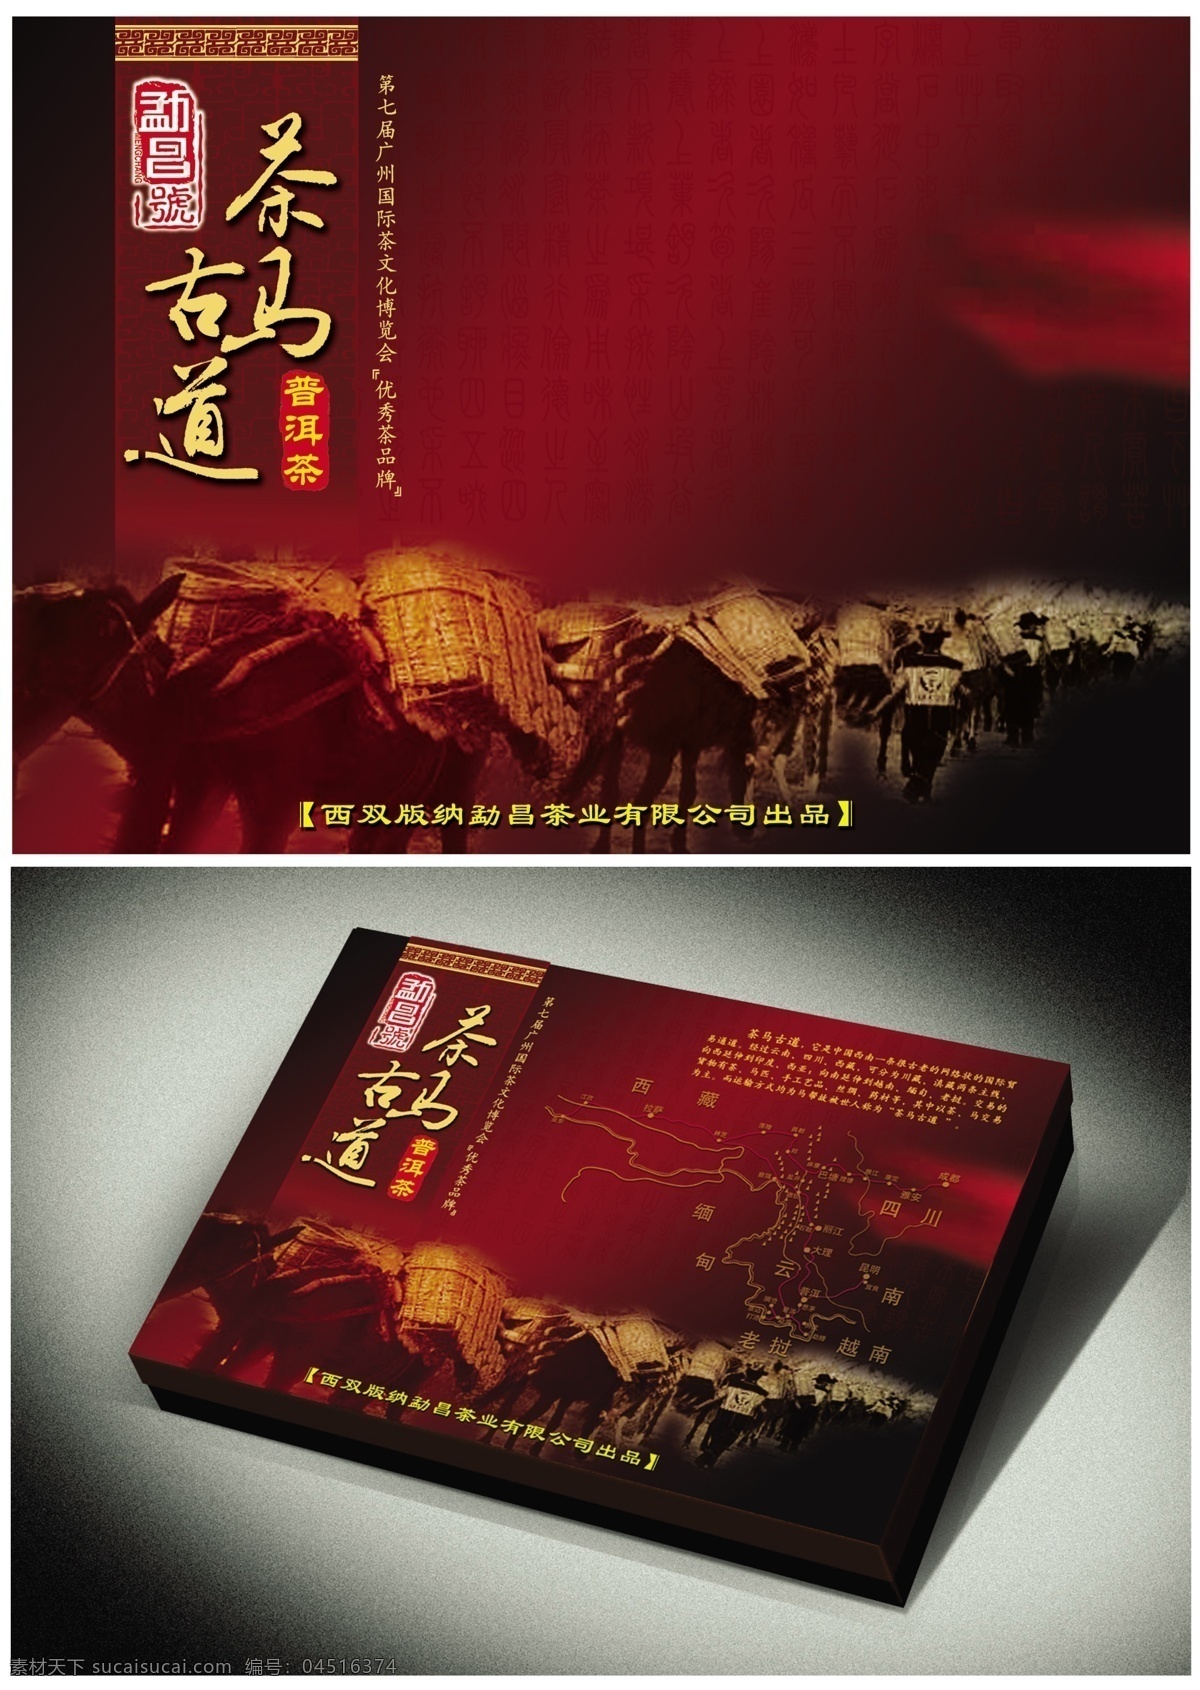 包装设计 茶叶盒 广告设计模板 源文件库 茶马古道 模板下载 其他海报设计